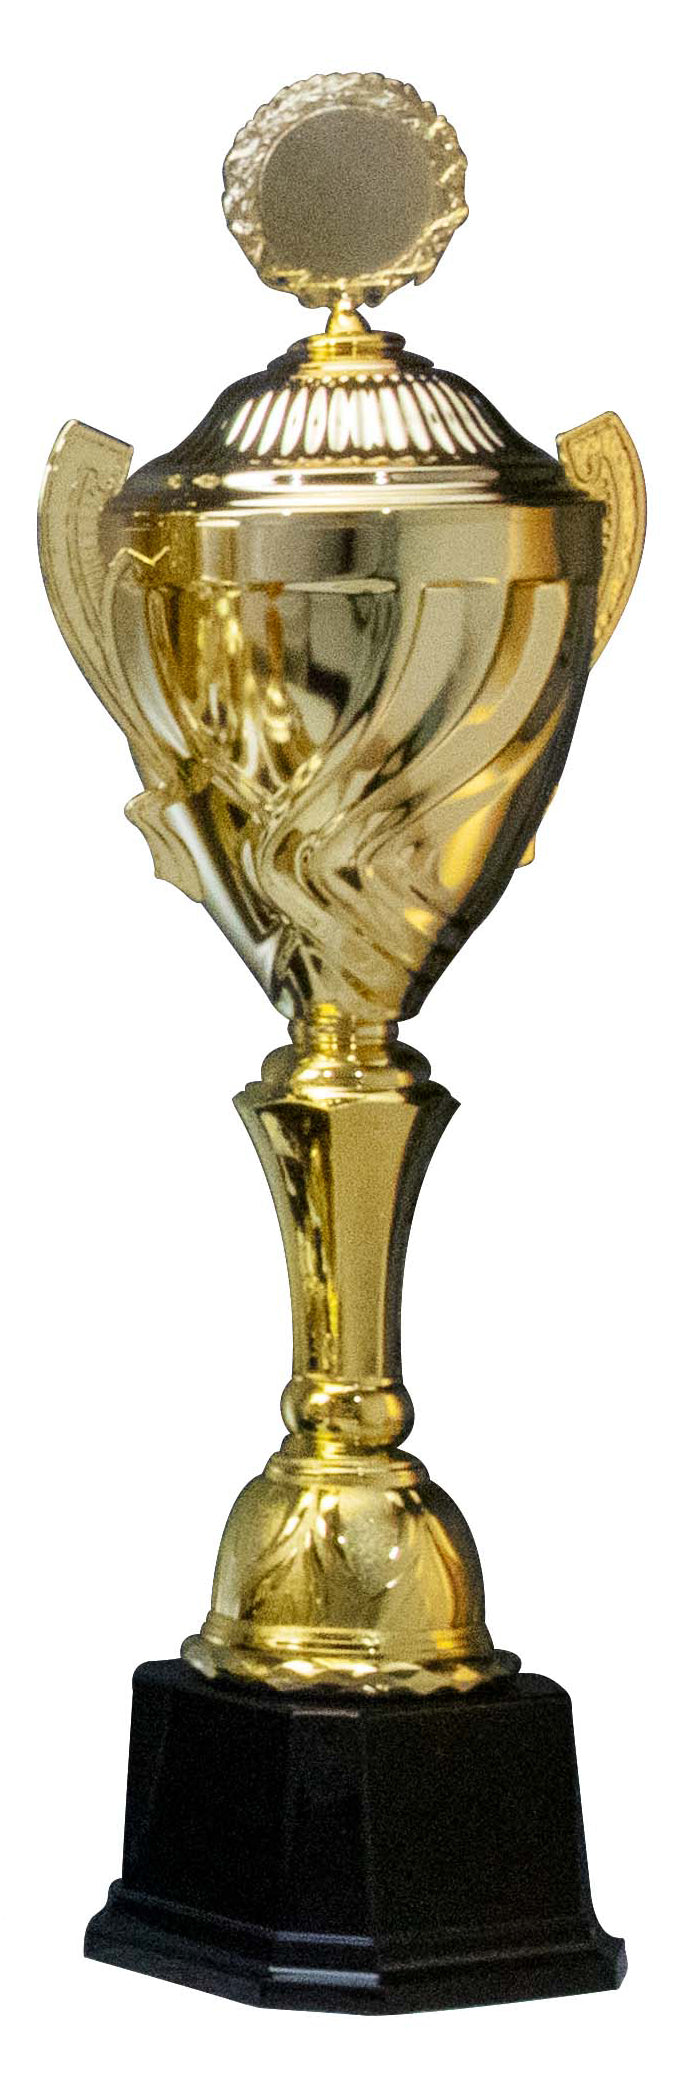 Pokale Bernau 10- er Pokalserie mit Deckel 360 mm - 630 mm PK756710-10-E50